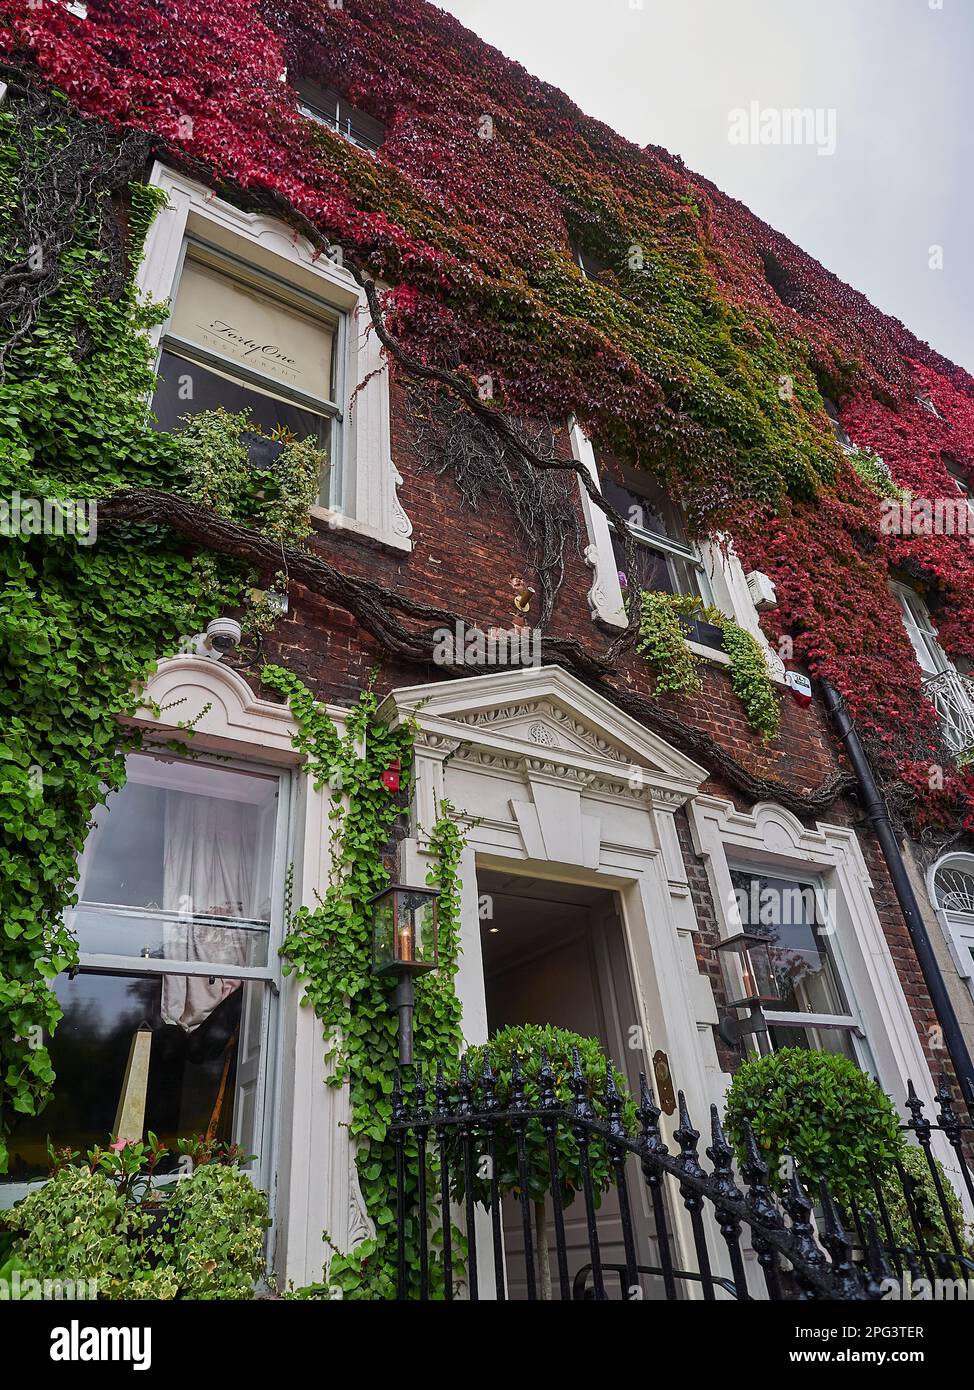 Dublin, Irland - 09 25 2015: Typisches Stadthaus mit überwucherten Mauern von farbenfrohem Efeu in den Straßen von Dublin an einem sonnigen Tag Stockfoto